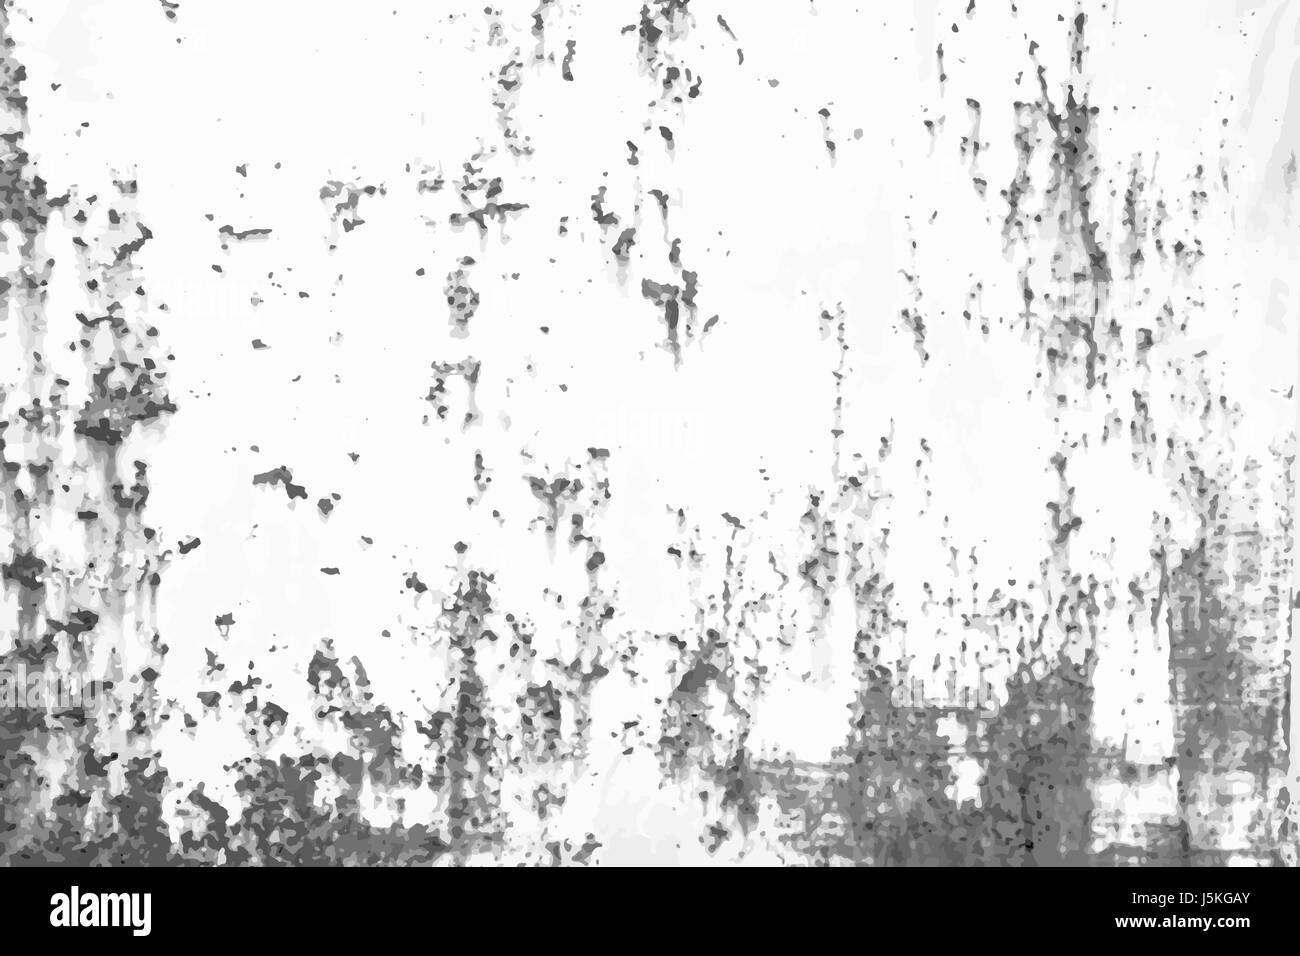 Rostiges Metall Vintage-Effekt Hintergrund. Grunge schwarz-weiß Vektor Textur Vorlage für Overlay-Grafik. Stock Vektor